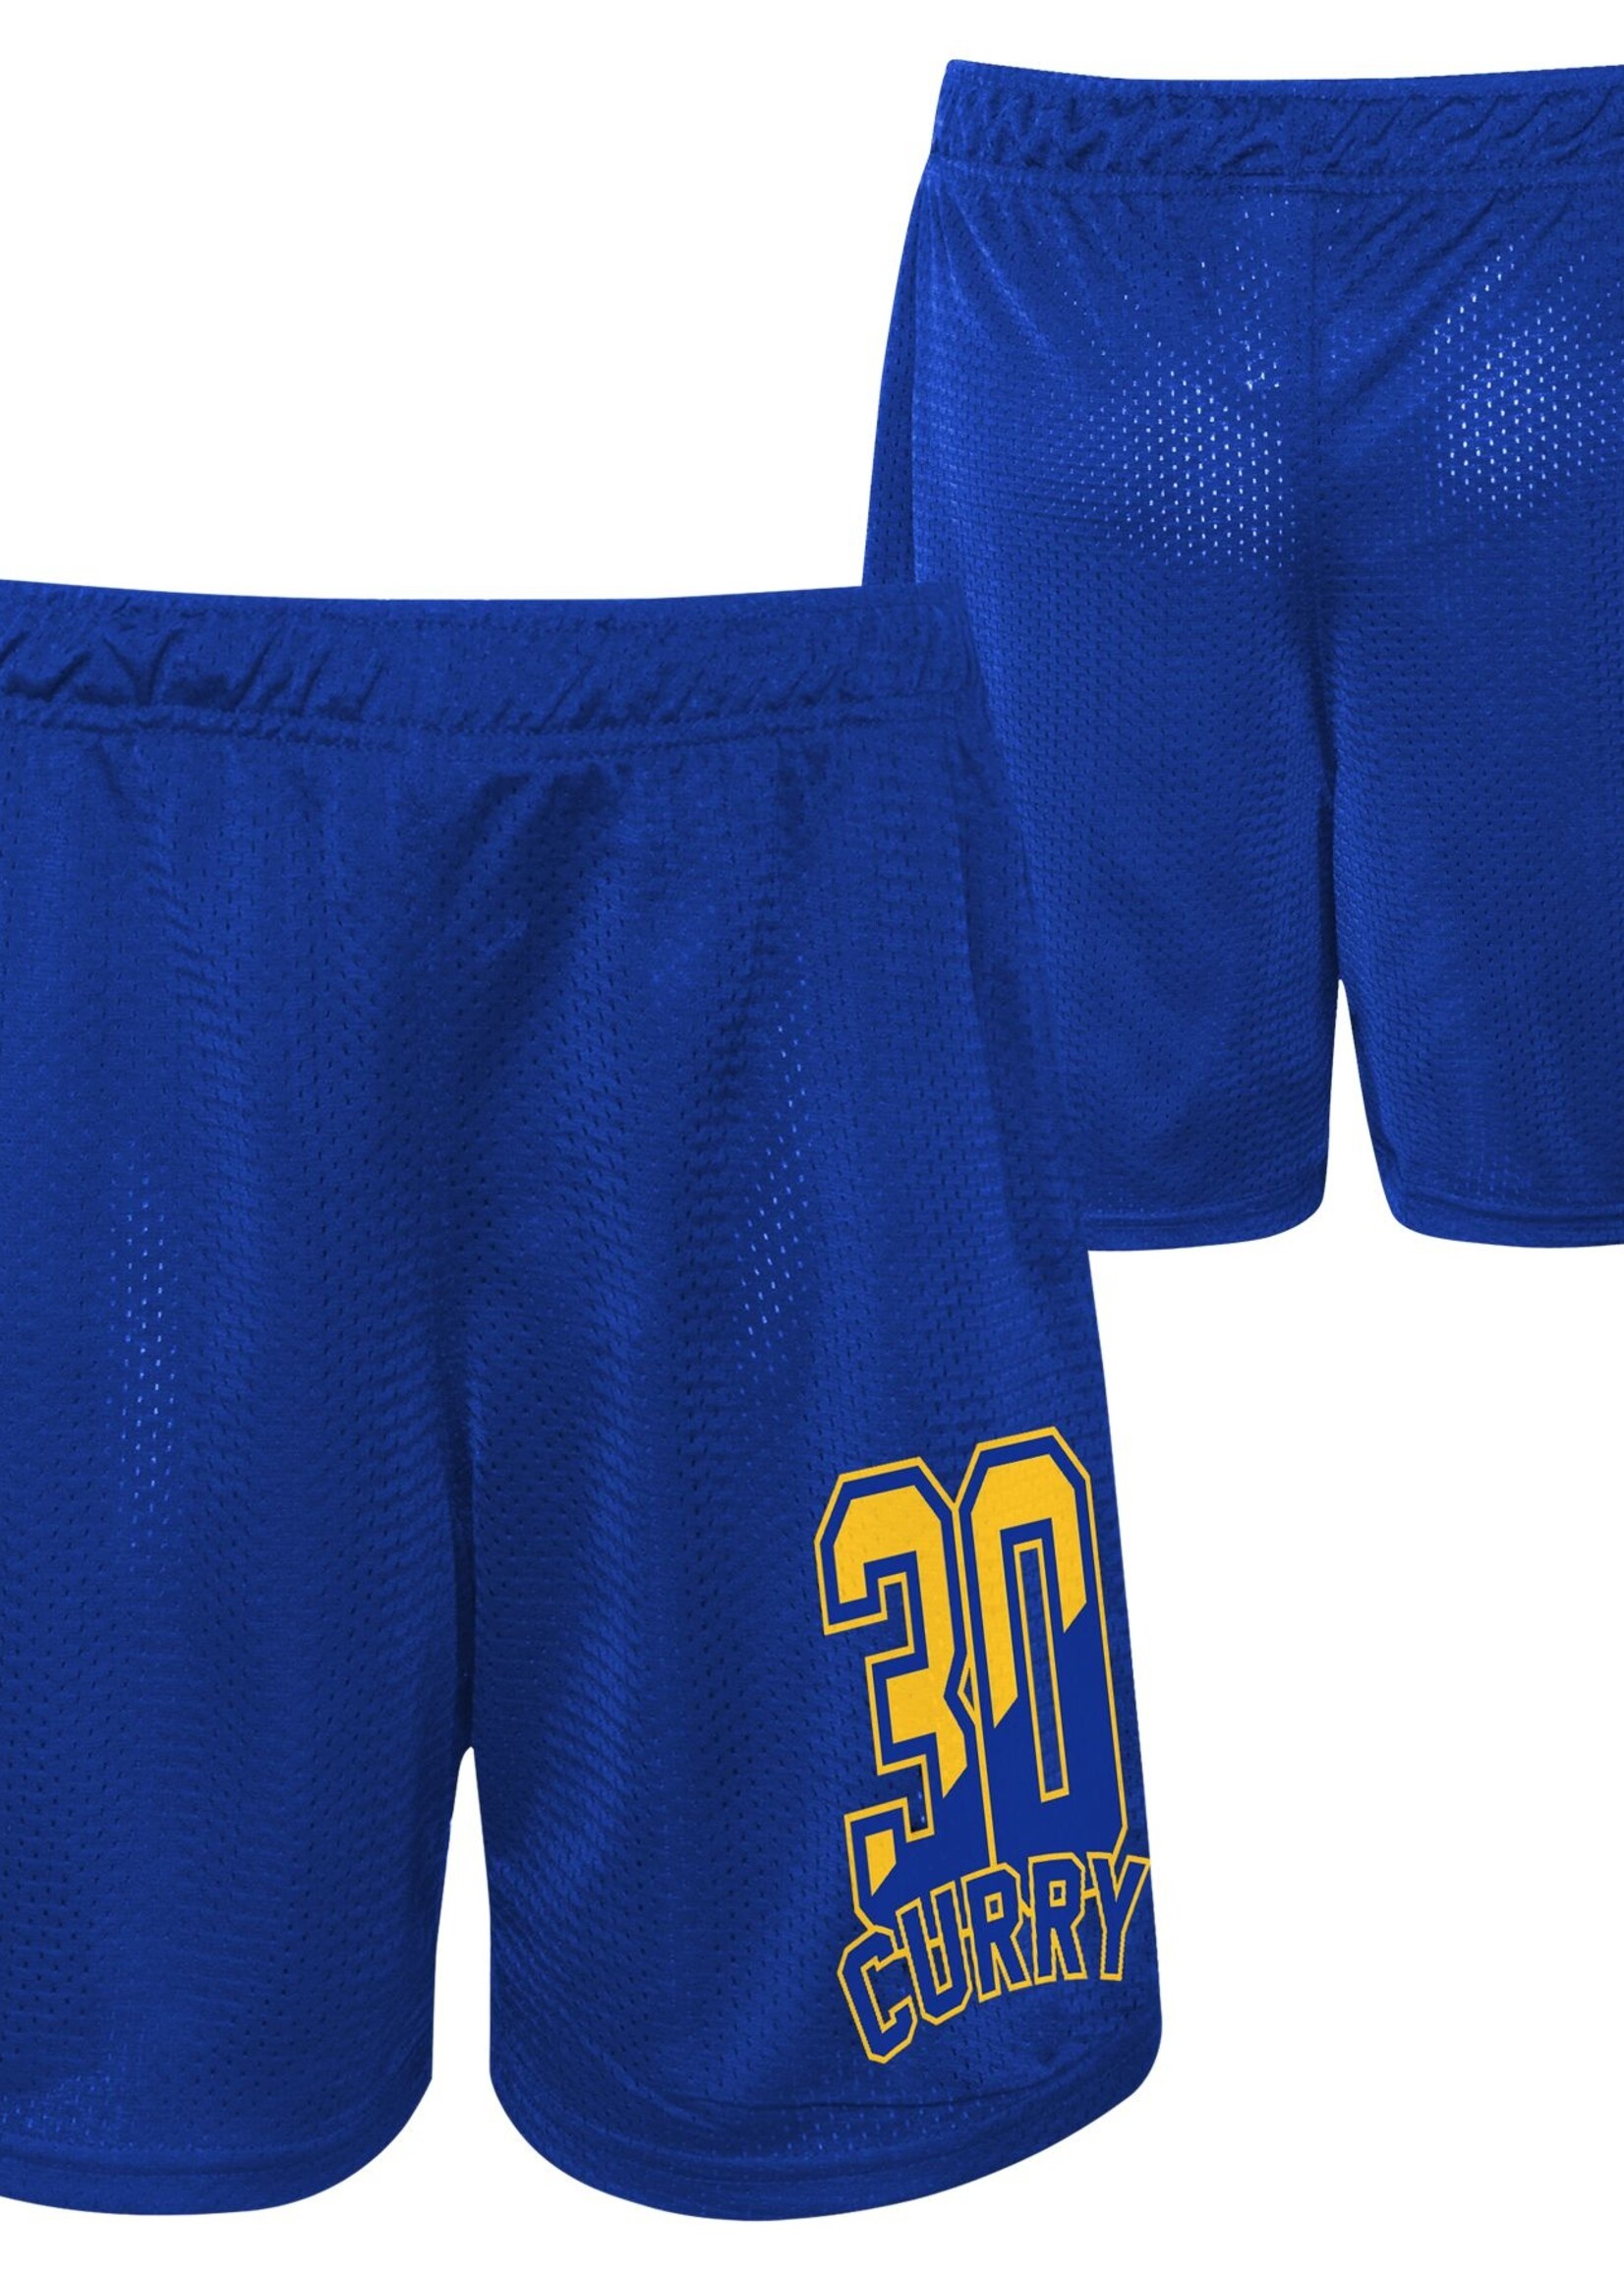 Outerstuff NBA Steph Curry Short Blauw  2.0